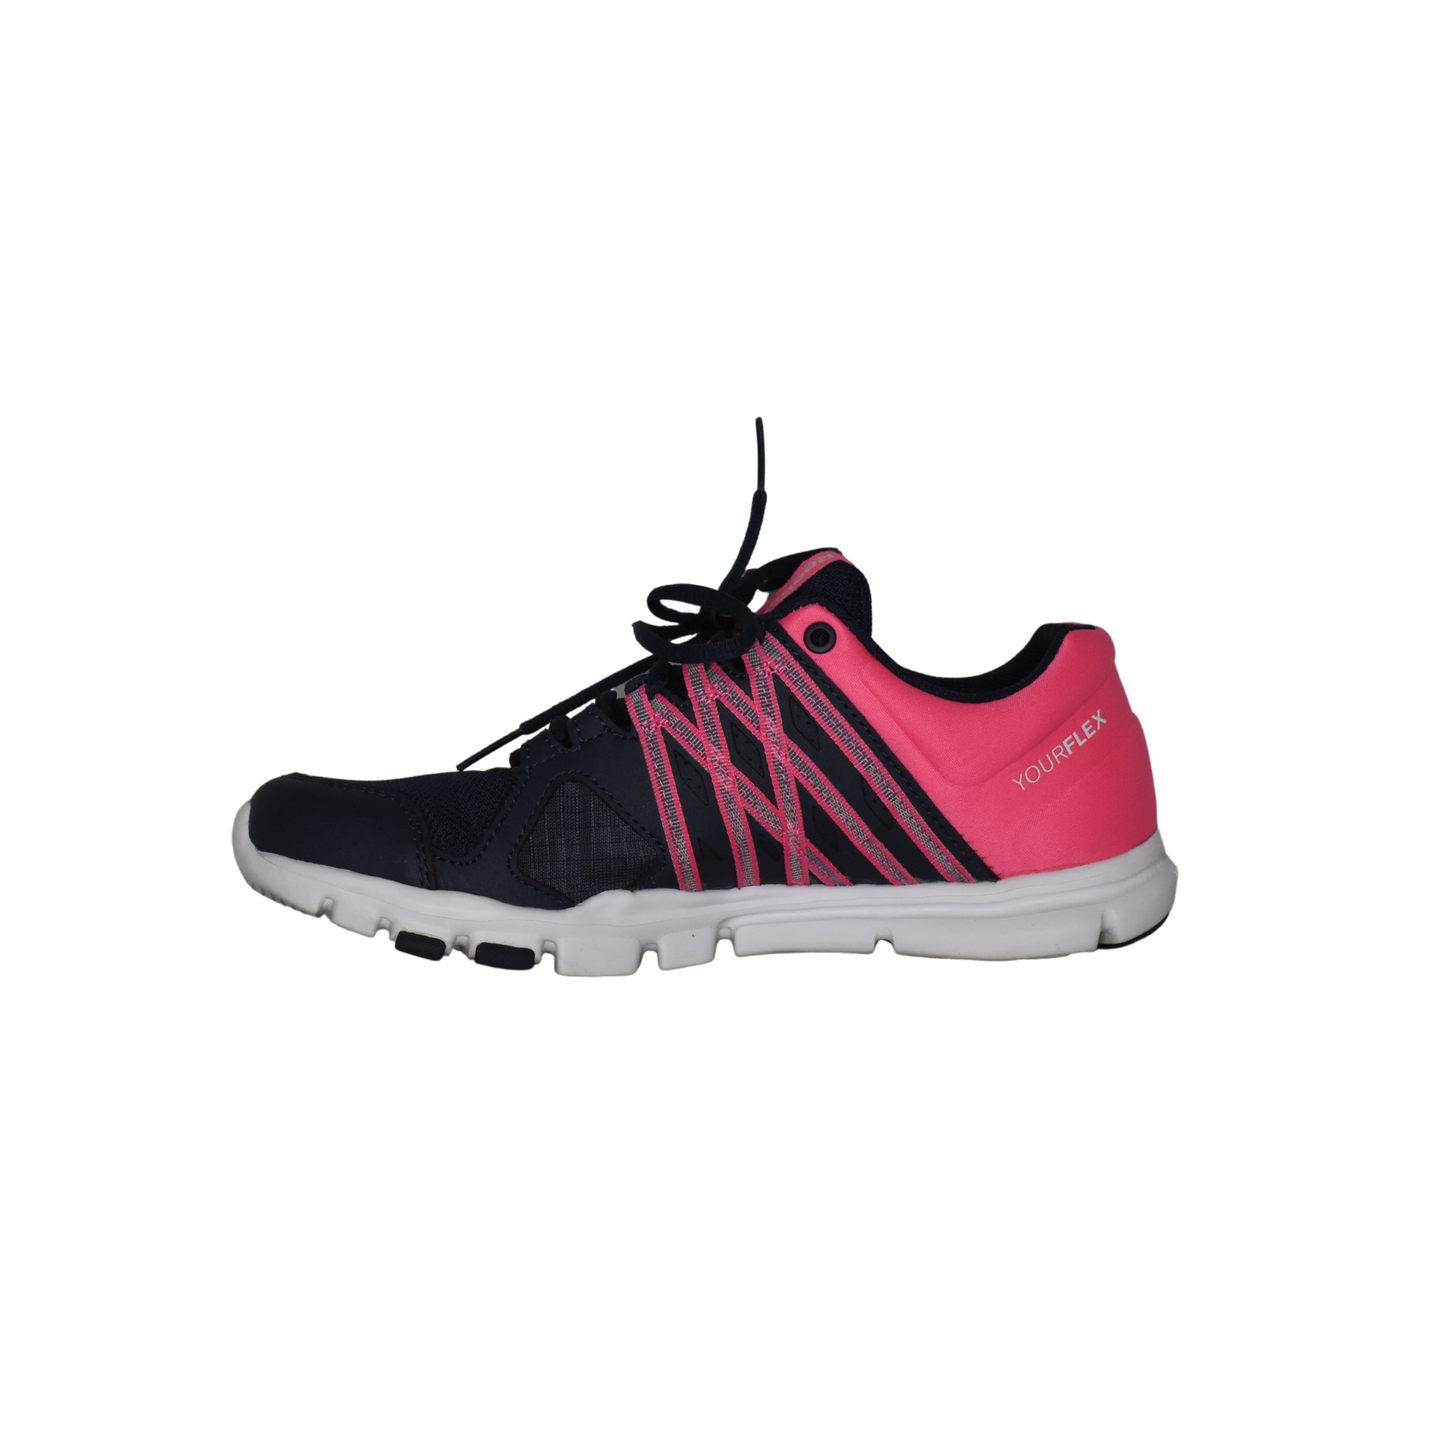 Reebok Sneakers Navy, Hot Pink Size 7.5 SKU 000093-4